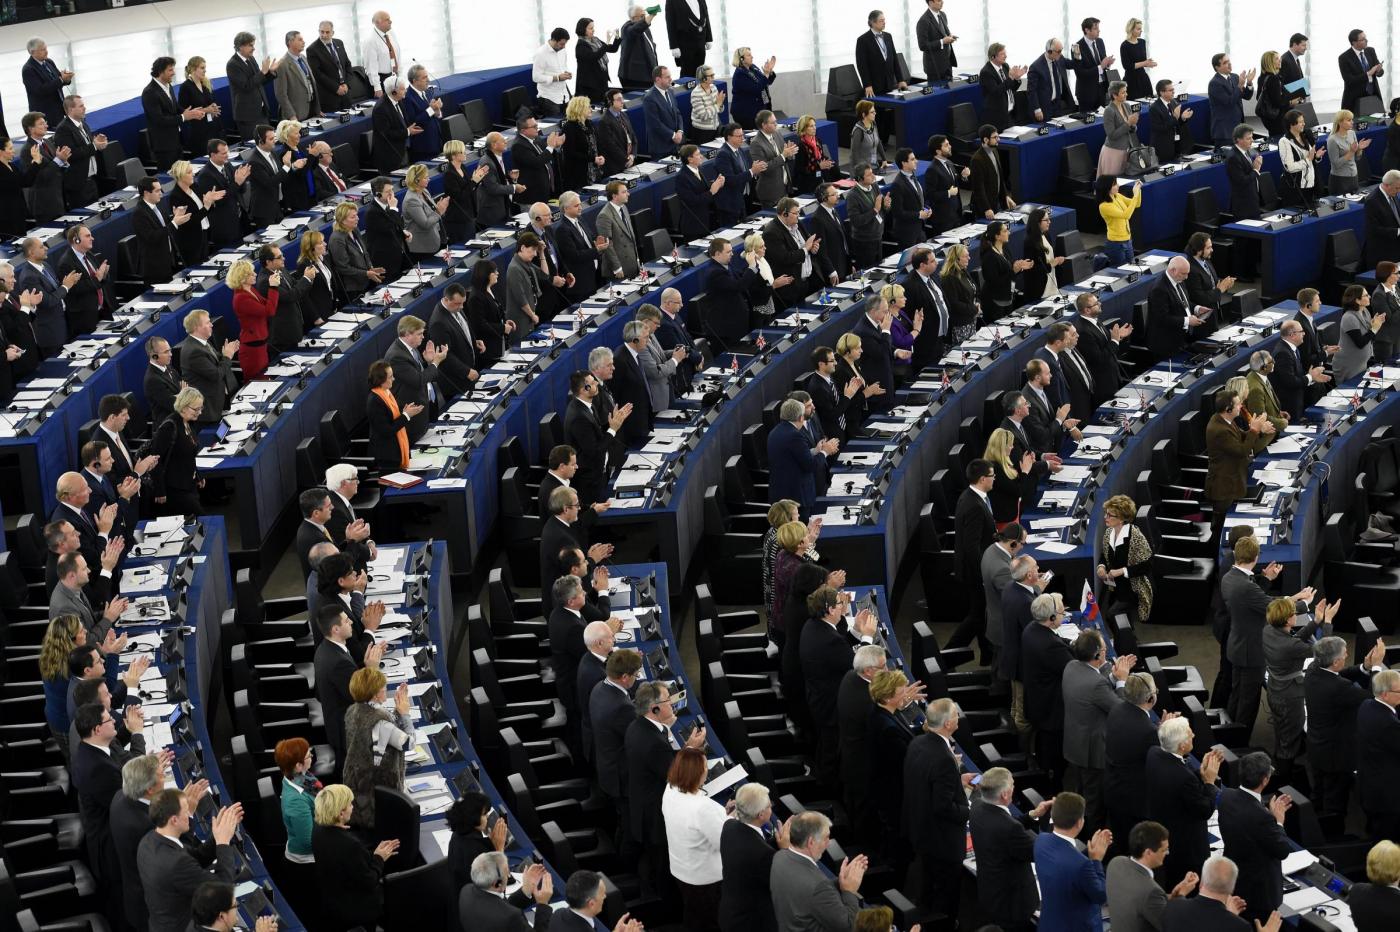 Parlamentari europei, italiani i più presenti e lavoratori